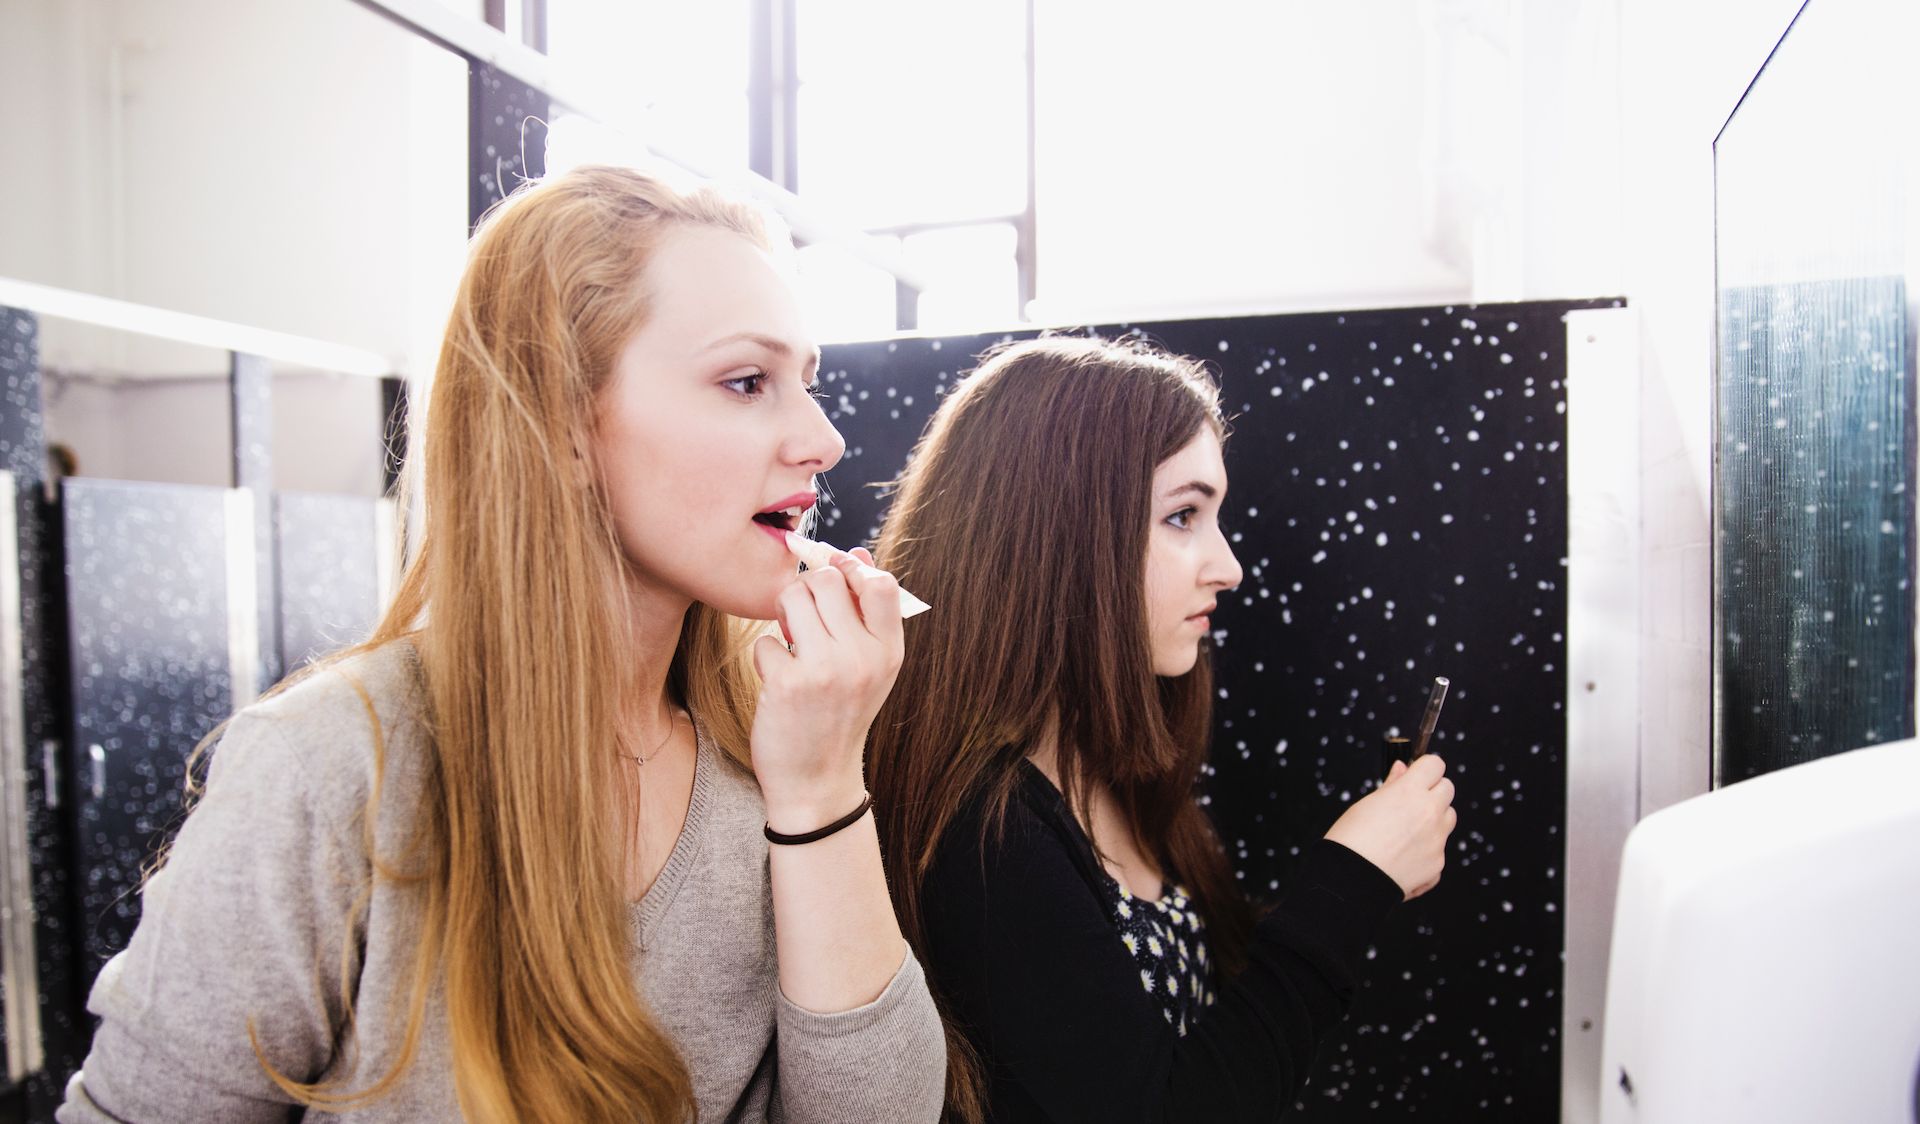 Teenage girls applying makeup in a bathroom